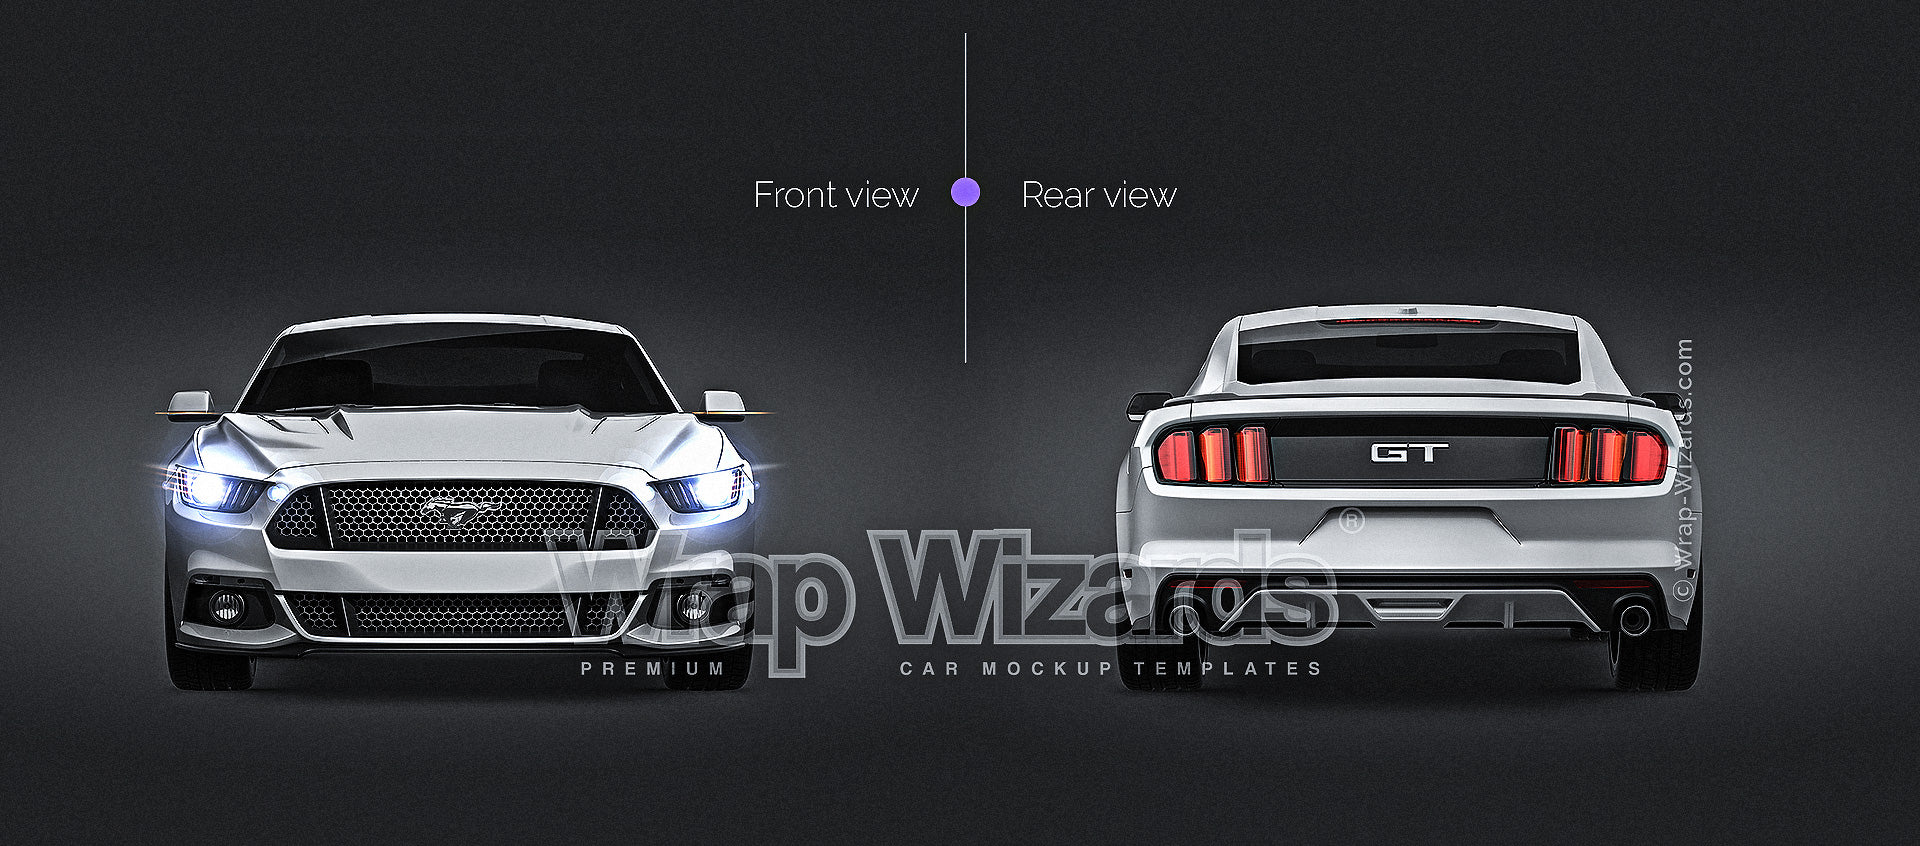 Ford Mustang GT 2015 - Car Mockup